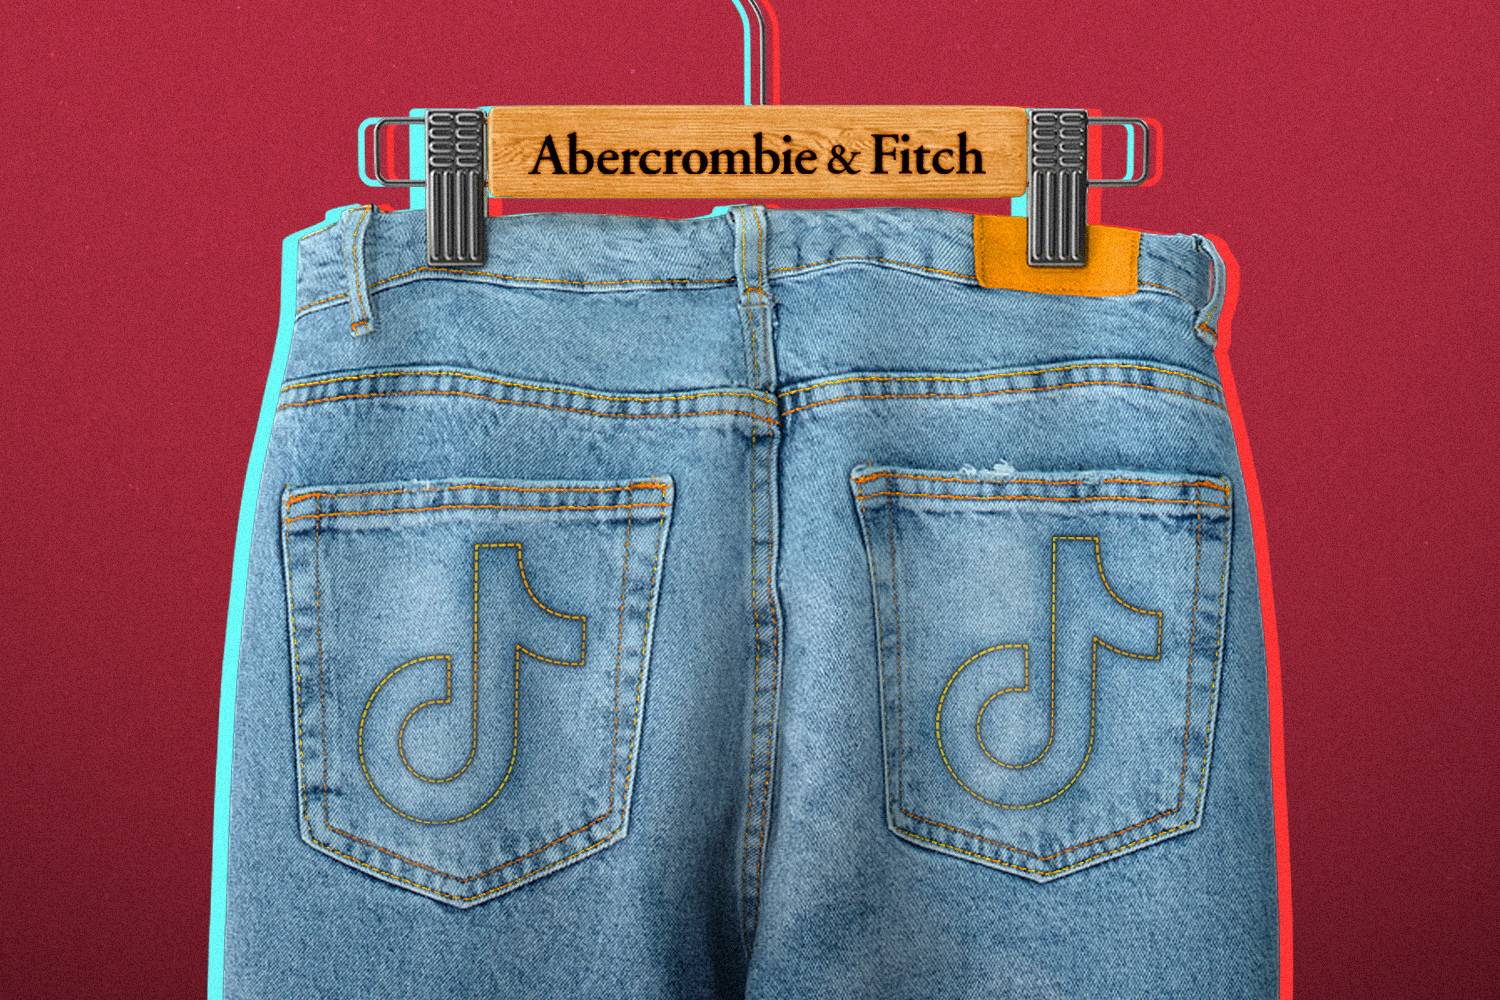 Abercrombie & Fitch jeans with TikTok logo